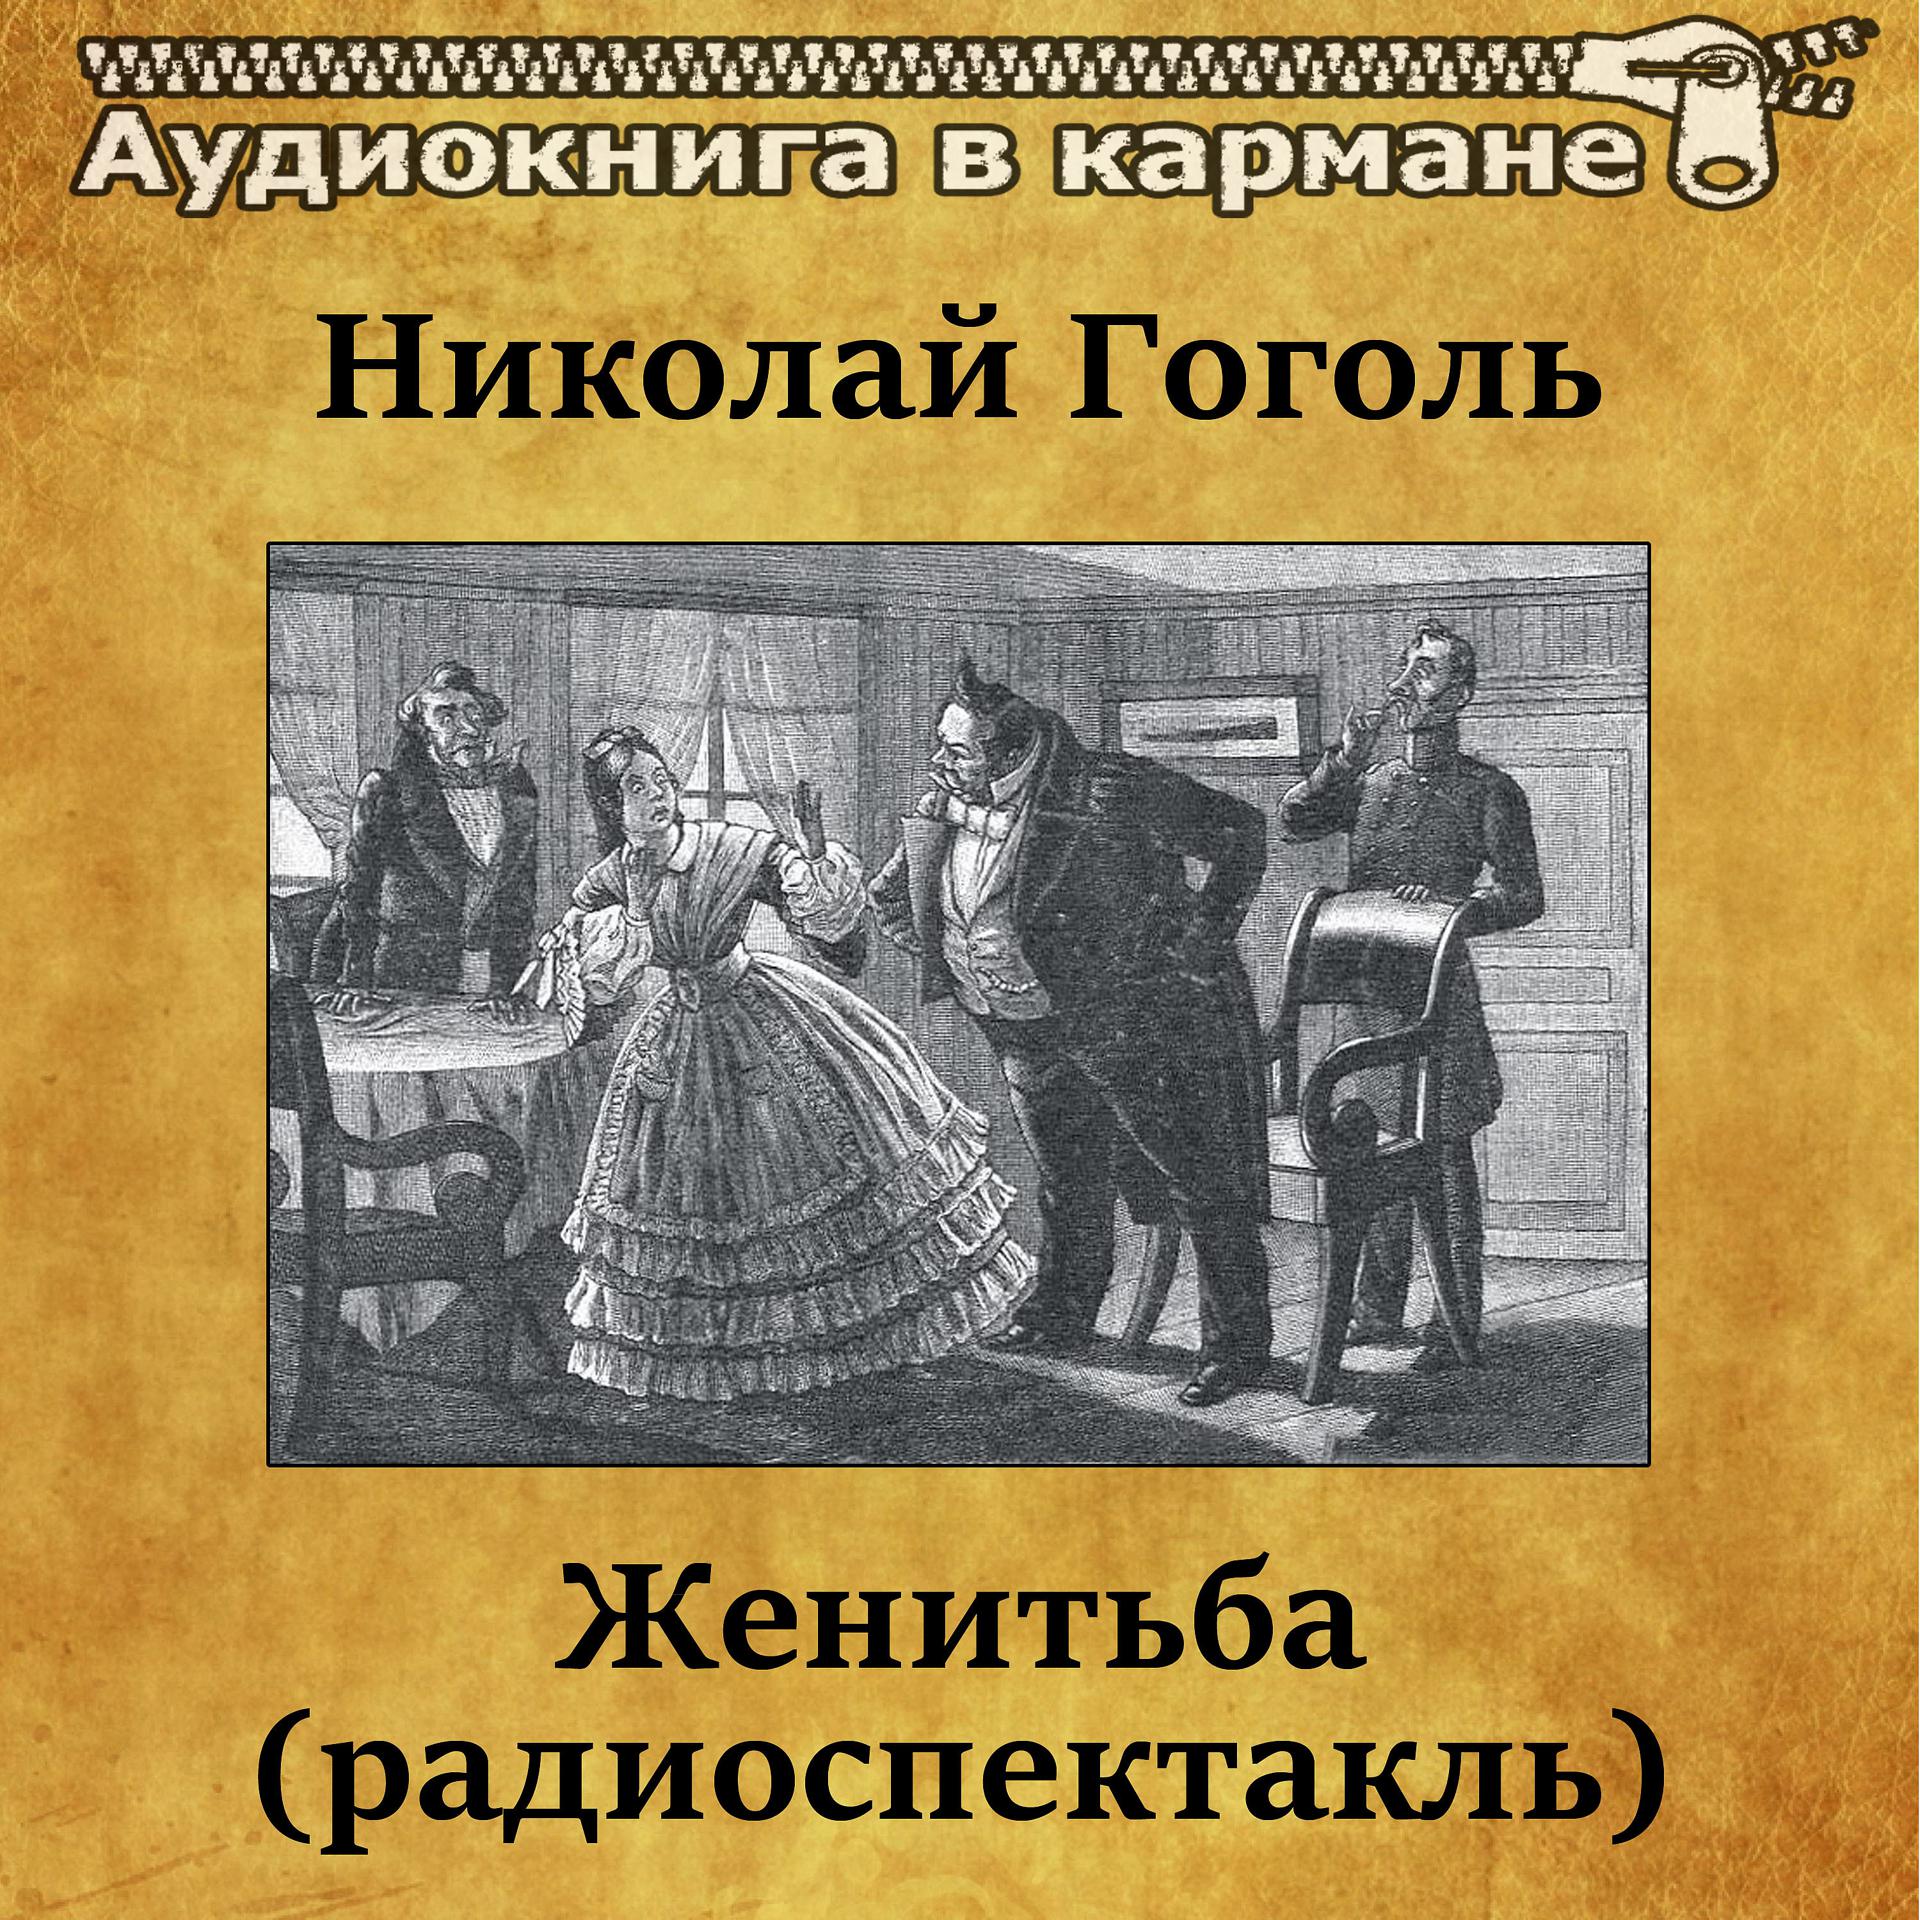 Постер к треку Аудиокнига в кармане, Лев Дуров - Женитьба, Чт. 2